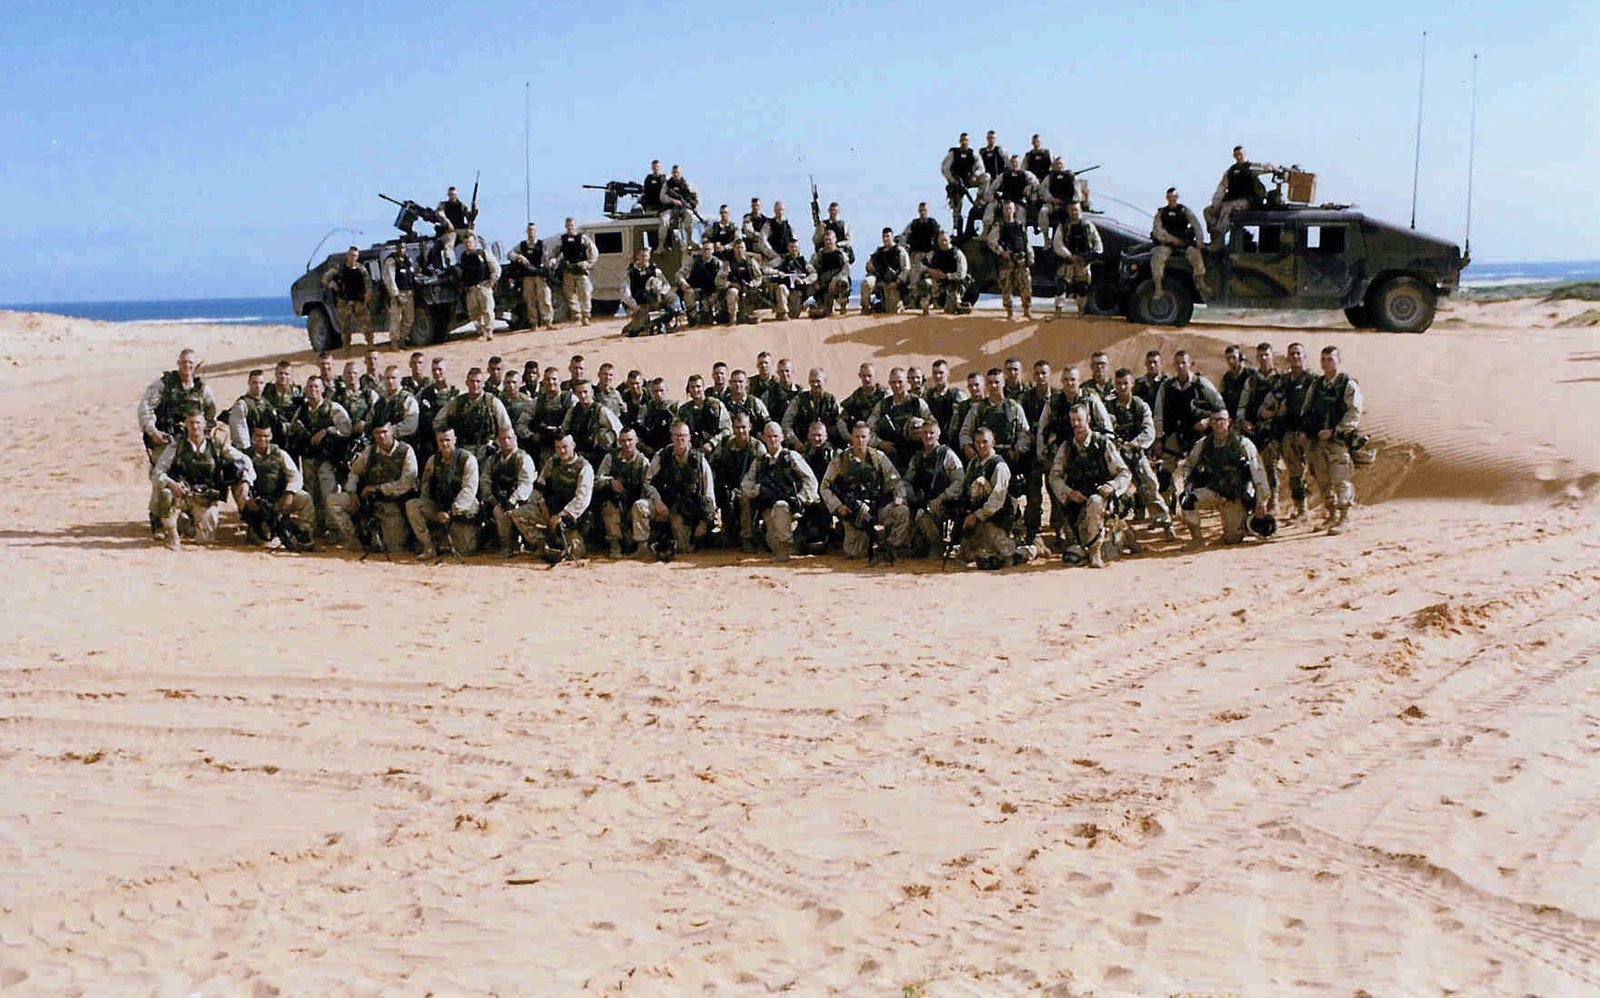 75th_Ranger_Regiment_Bravo_Company_3rd_Battalion_Somalia_1993